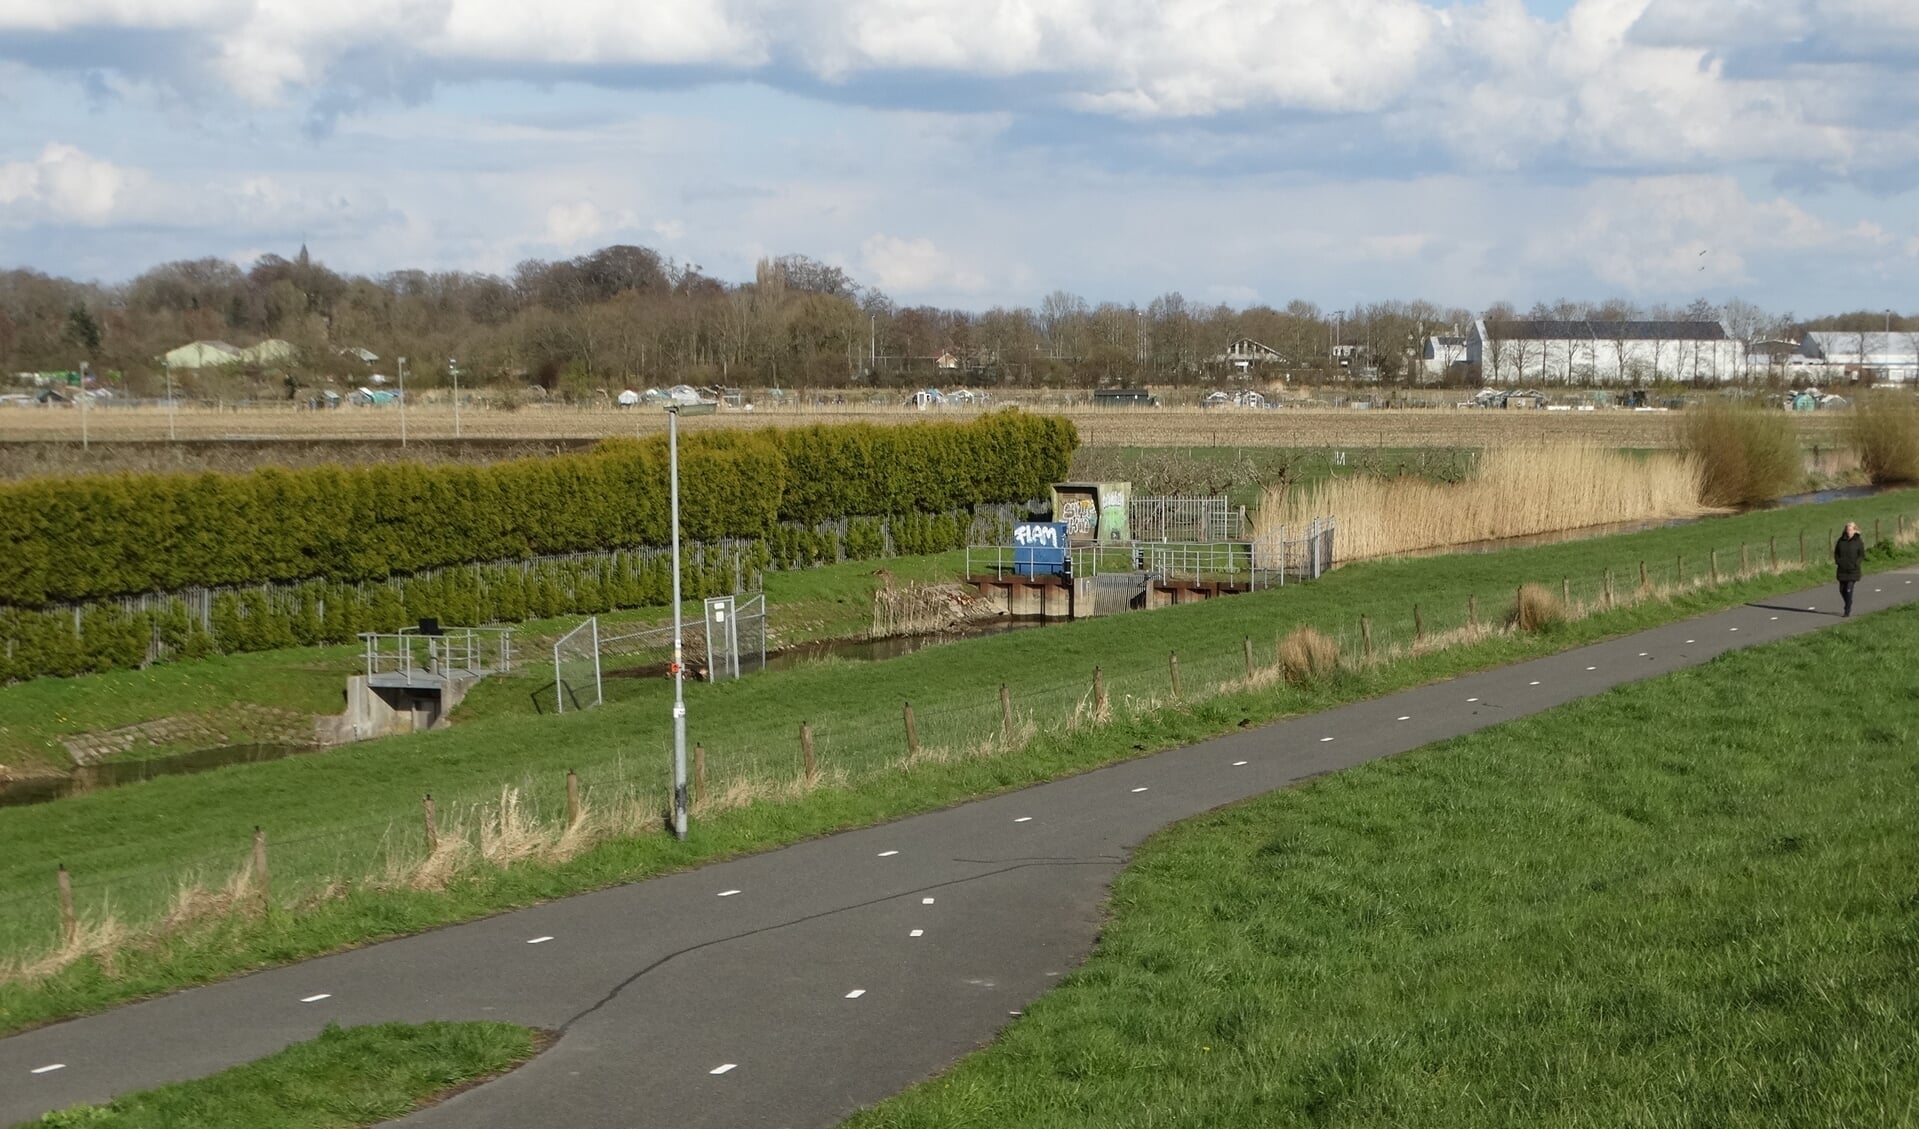 De woningbouwlocatie Zuidwijk langs het AR- kanaal, op de achtergrond de Marienhoeve